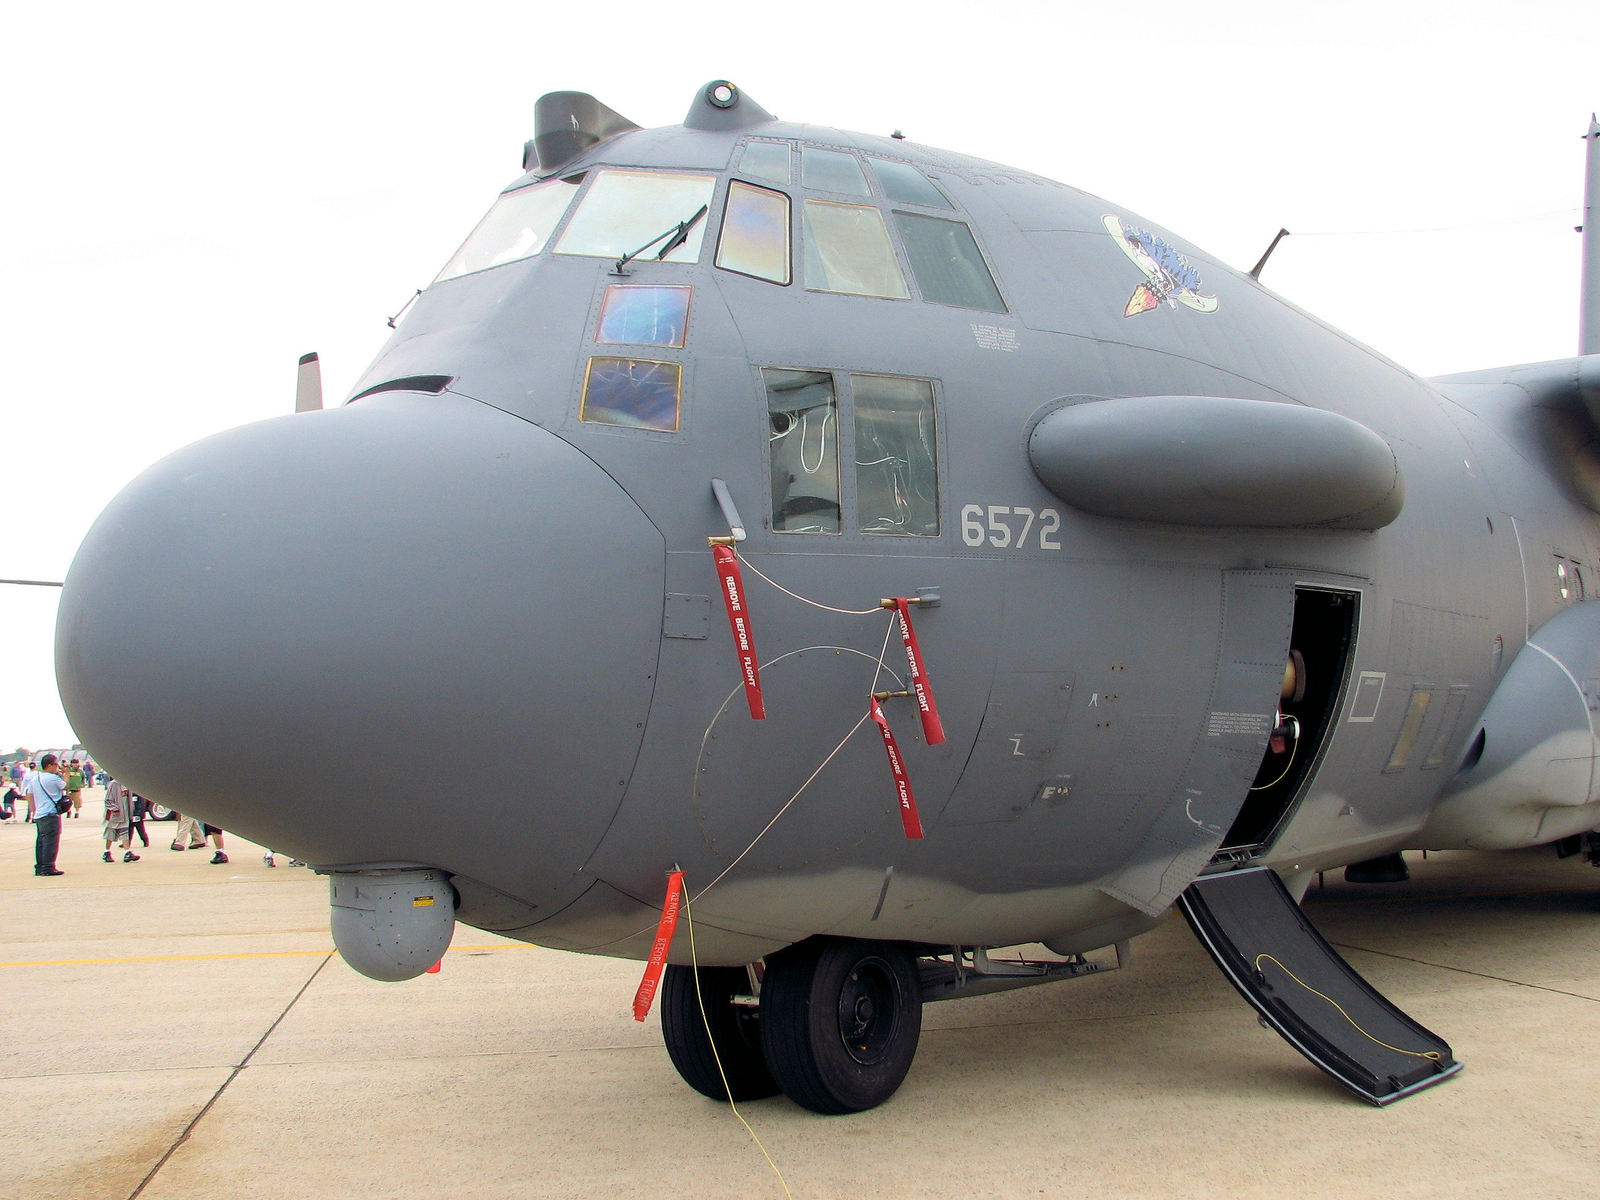 AC-130A Specter. Gunships in Vietnam. - American aircraft, Vietnam war, Longpost, Airplane, Aviation